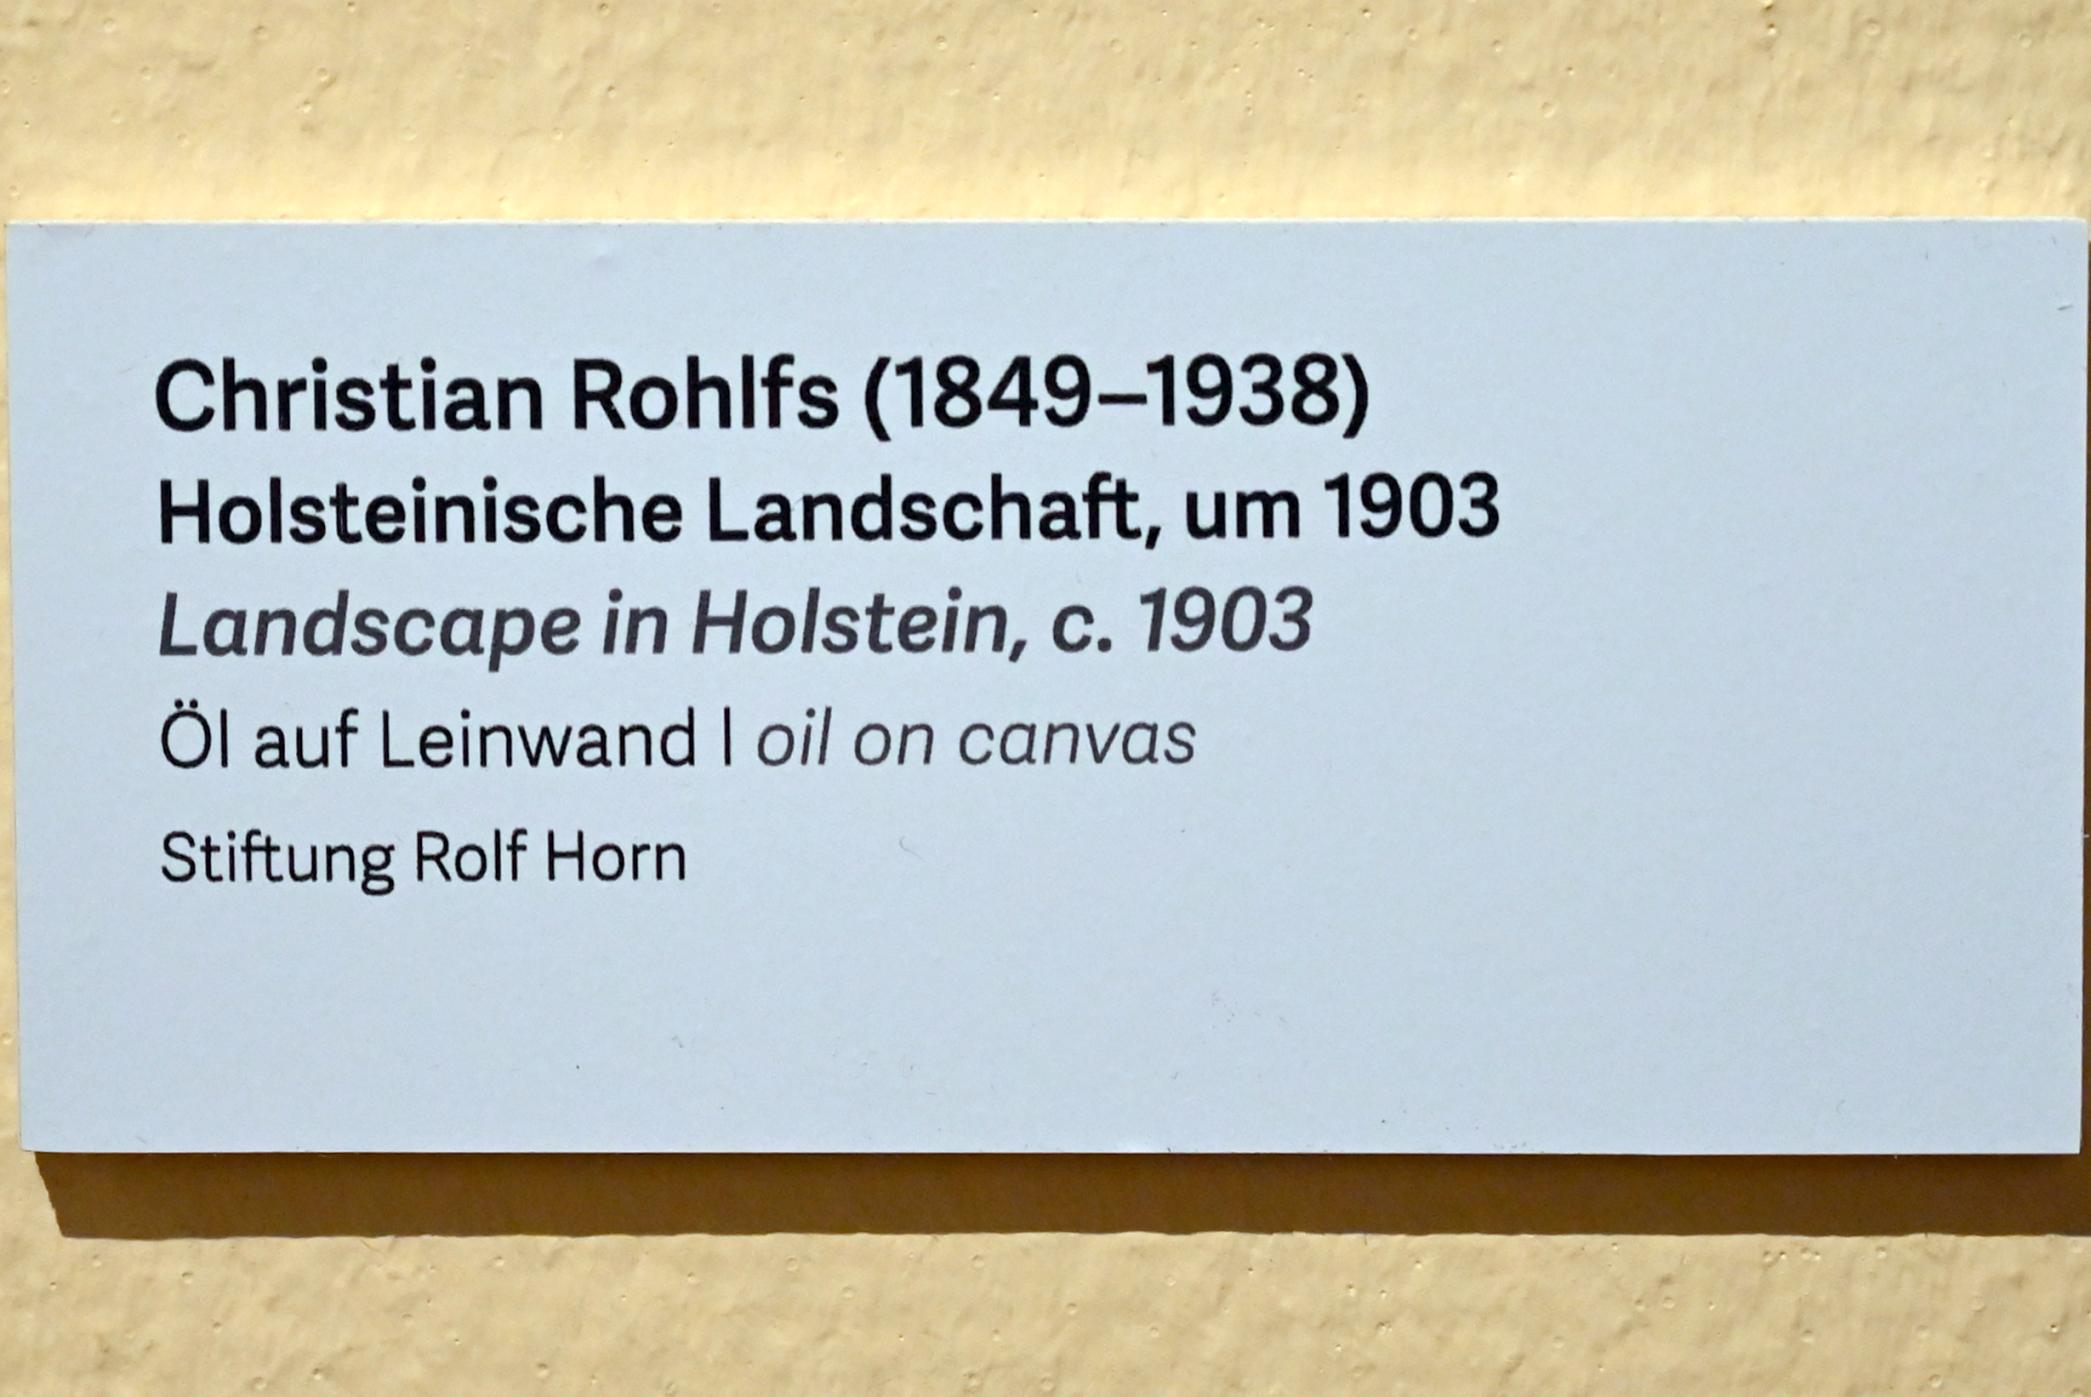 Christian Rohlfs (1874–1930), Holsteinische Landschaft, Schleswig, Landesmuseum für Kunst und Kulturgeschichte, Kunst im 20. Jh., um 1903, Bild 2/2